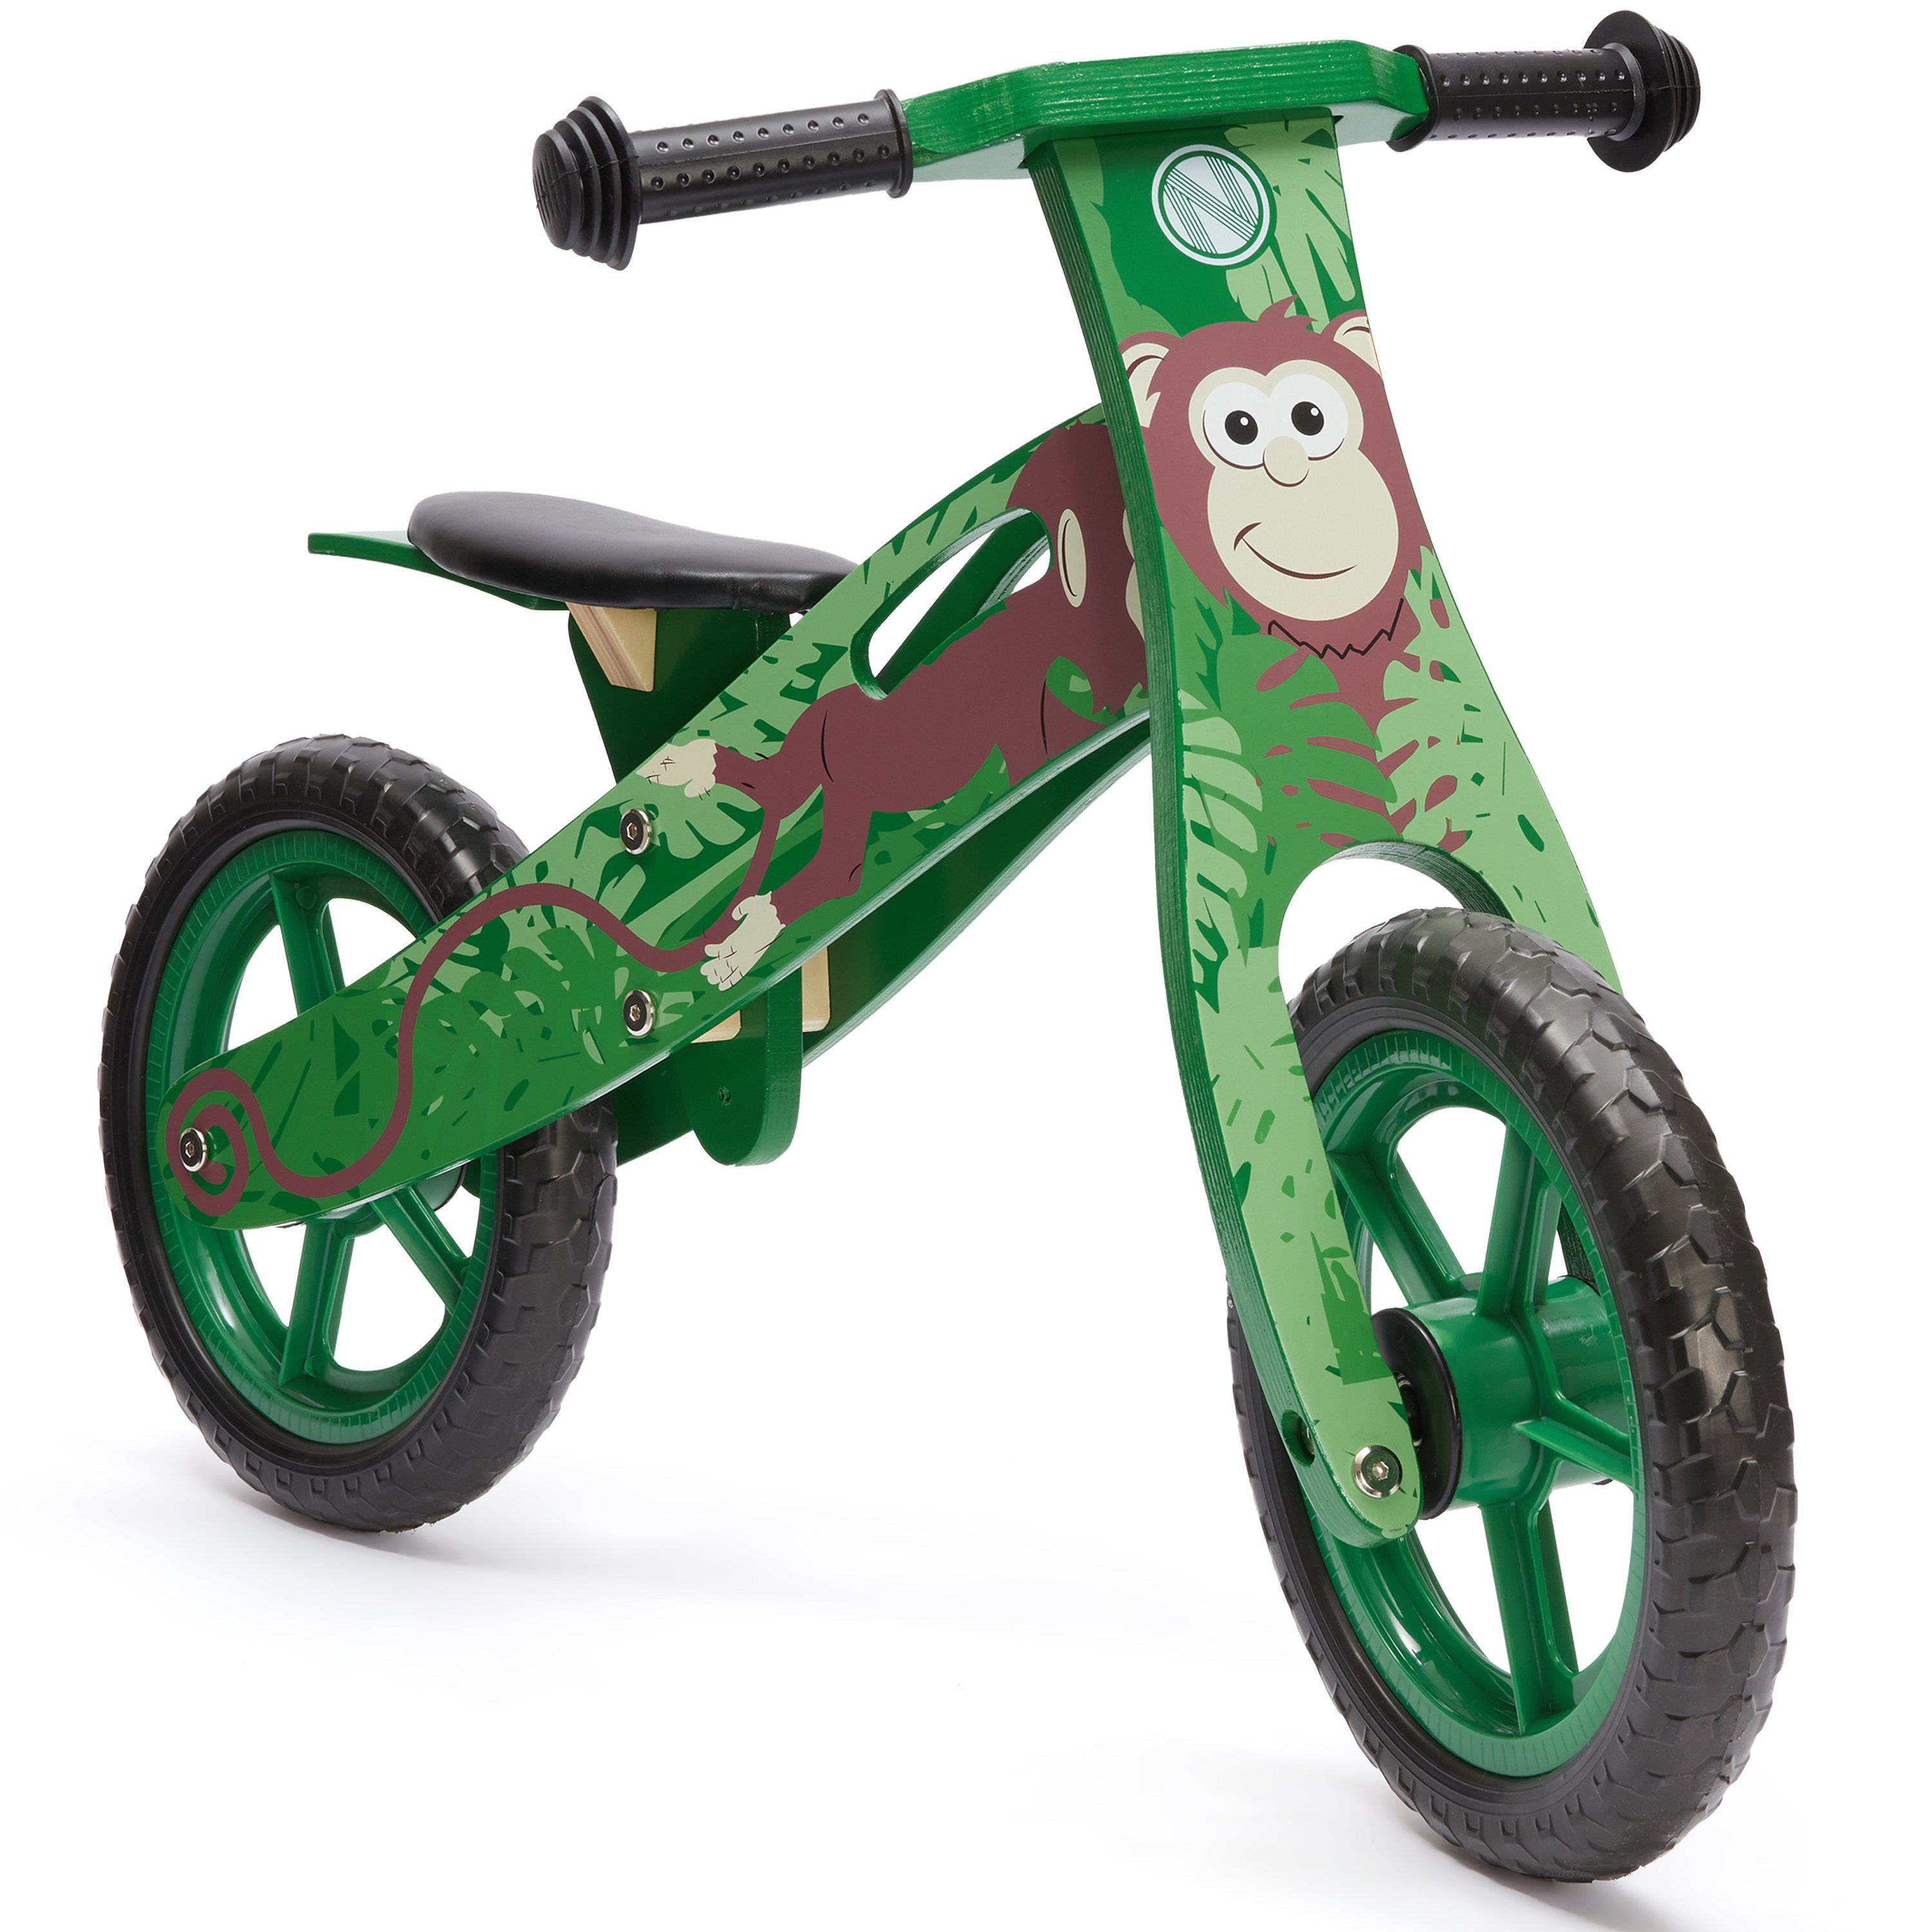 wuuhoo Laufrad Monkey aus Holz, mitwachsend im Dschungel Design, für Mädchen und Jungen ab 3 Jahren I mitwachsend ergonomisch I 12 Zoll Lauflernrad höhenverstellbar und flexibel | Laufräder